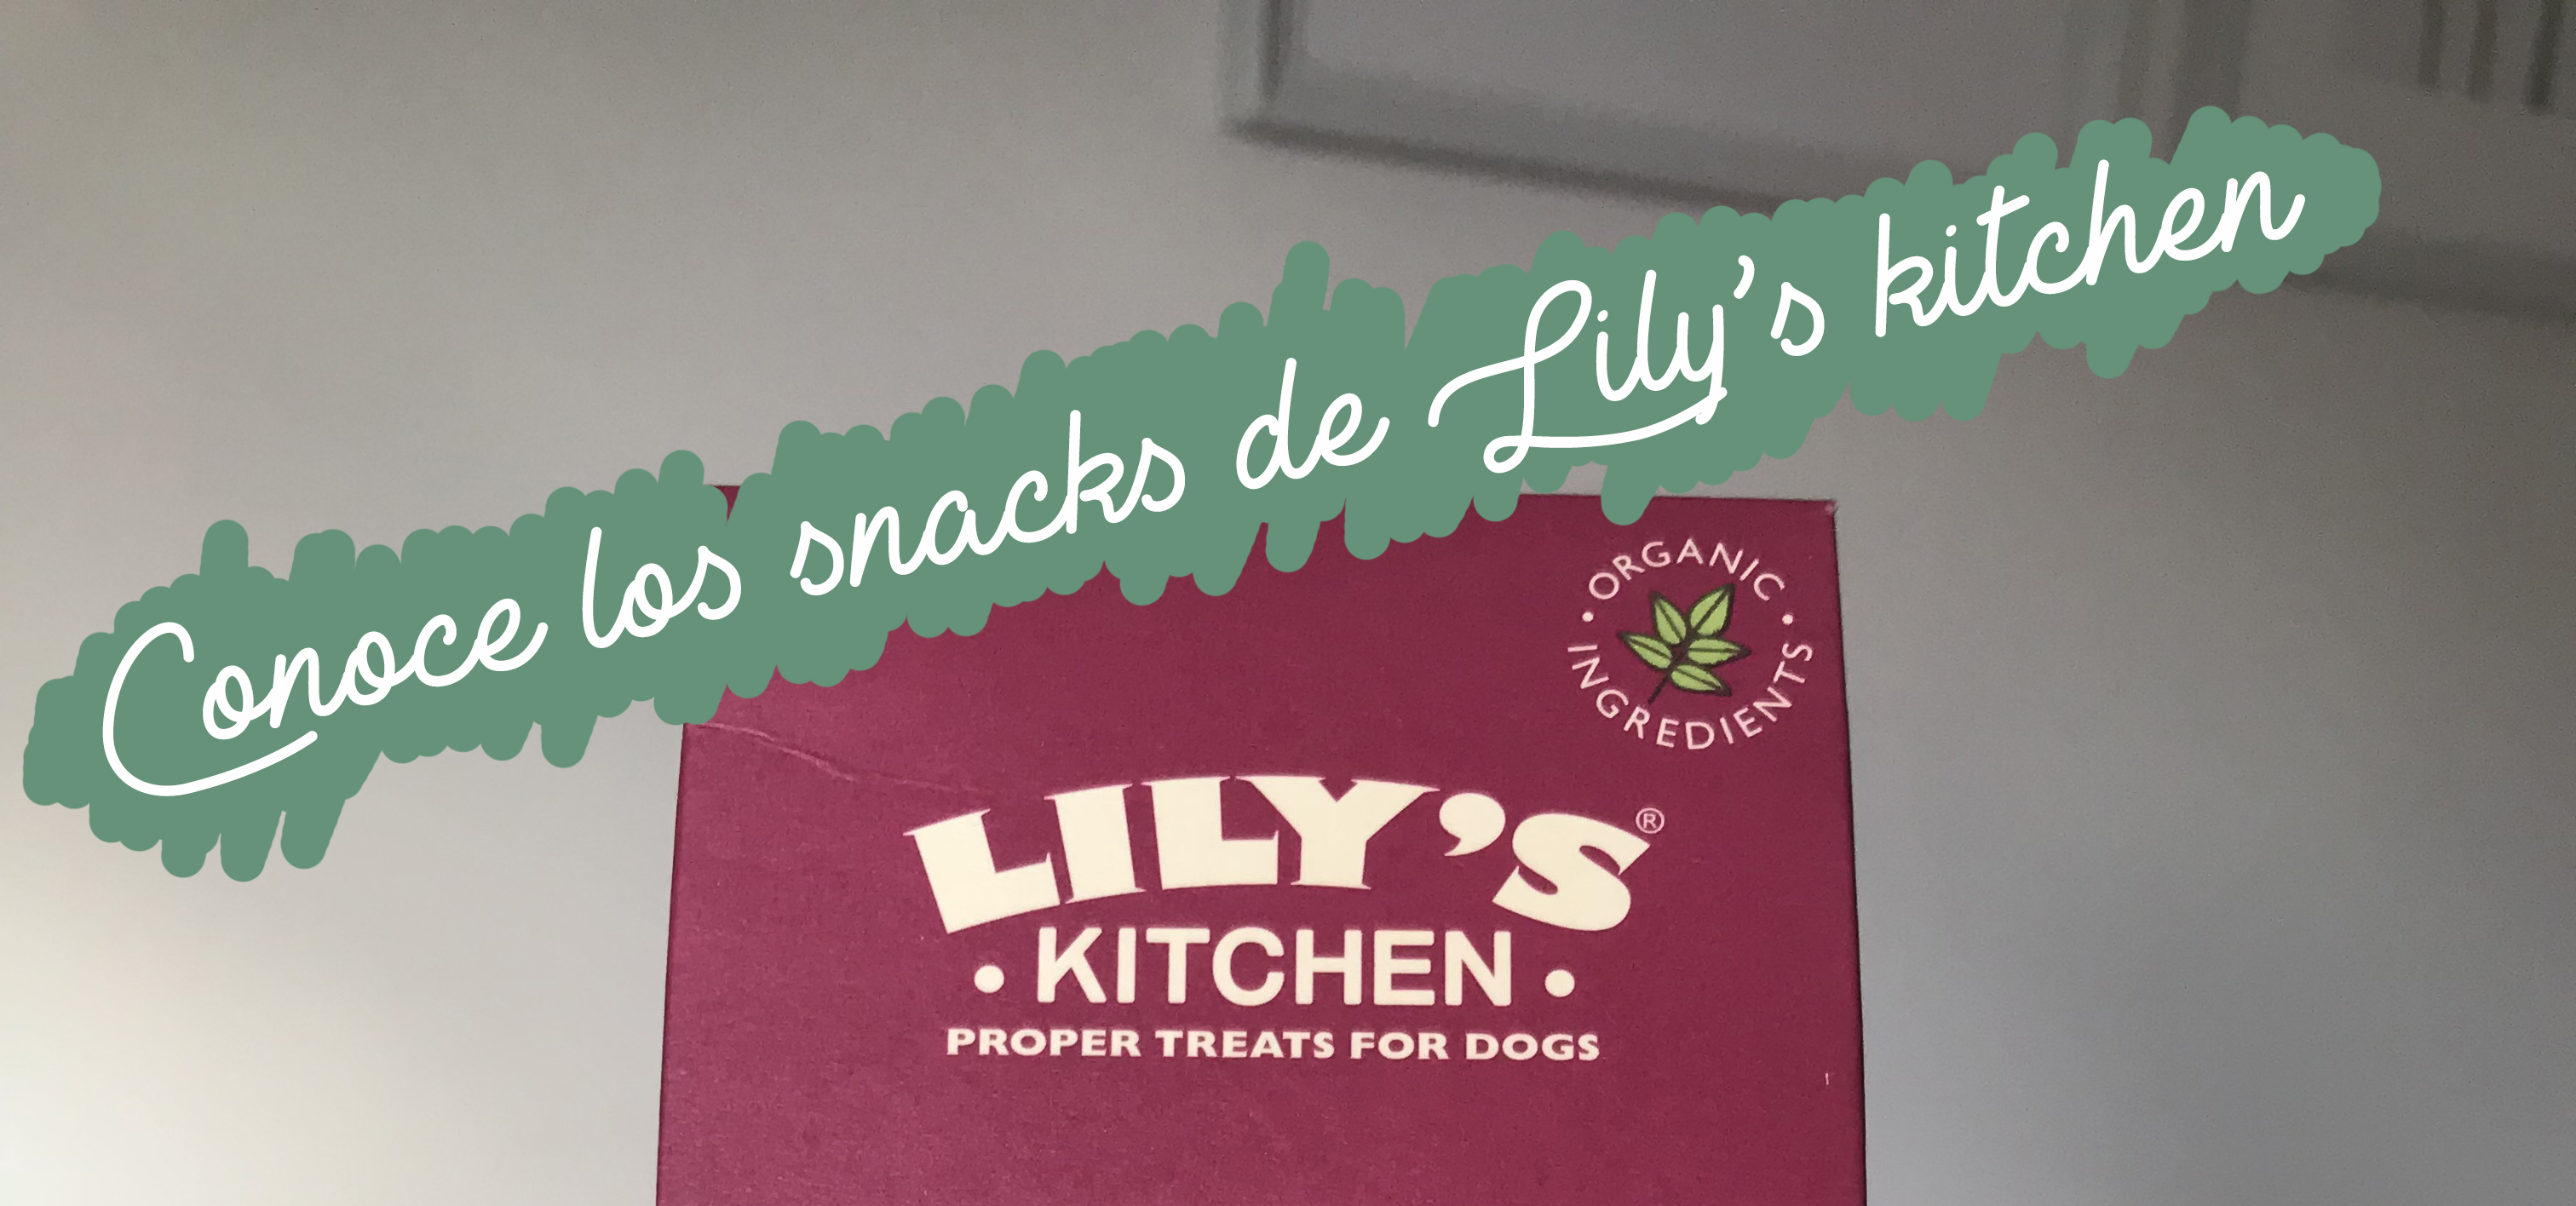 conoce-los-snacks-de-lily'skitchen